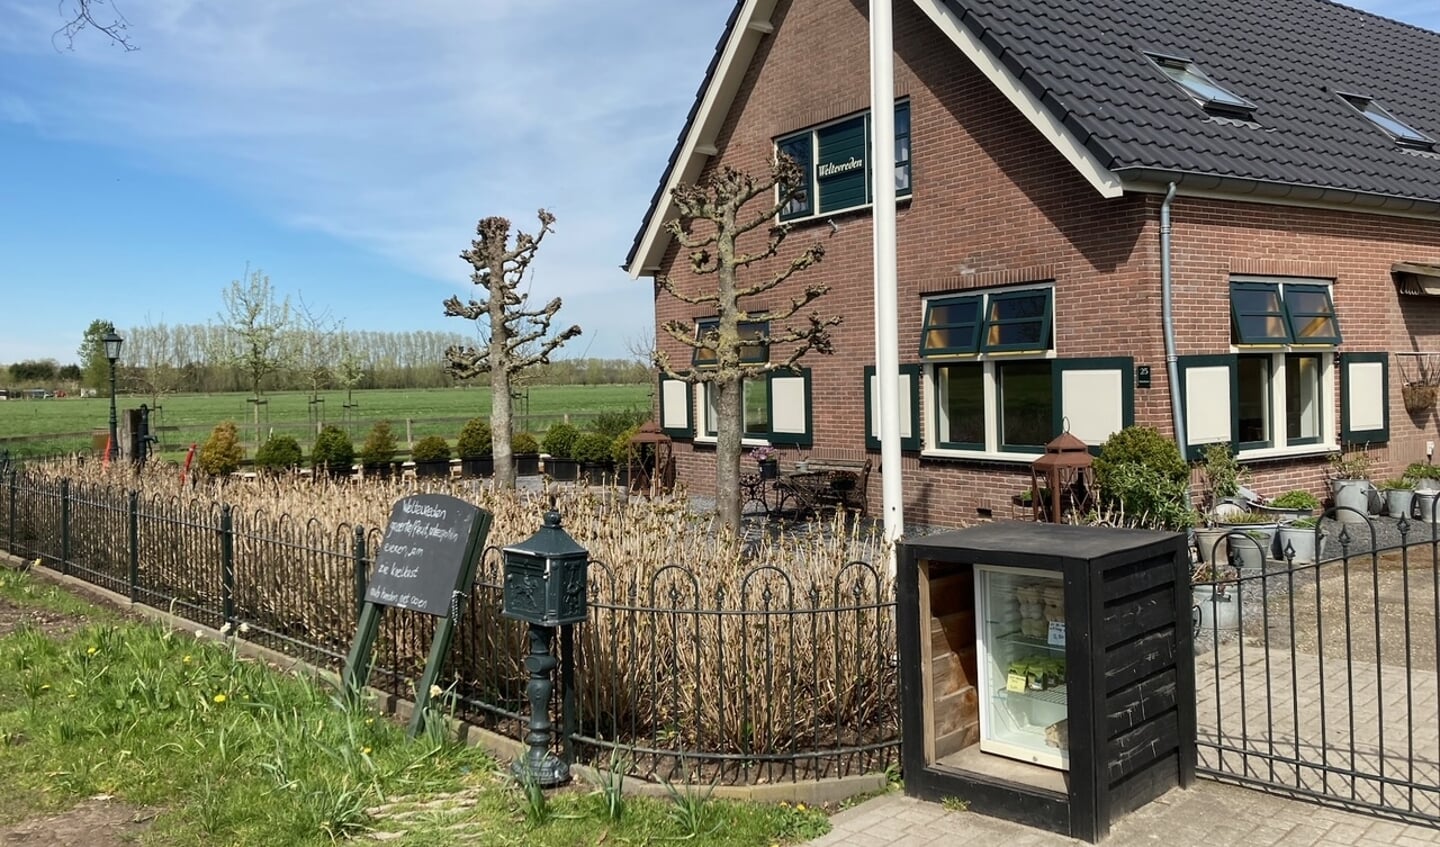 In de regio is volop aanbod, zoals bijvoorbeeld hier bij boerderij Weltevreden aan de Langbroekerdijk.